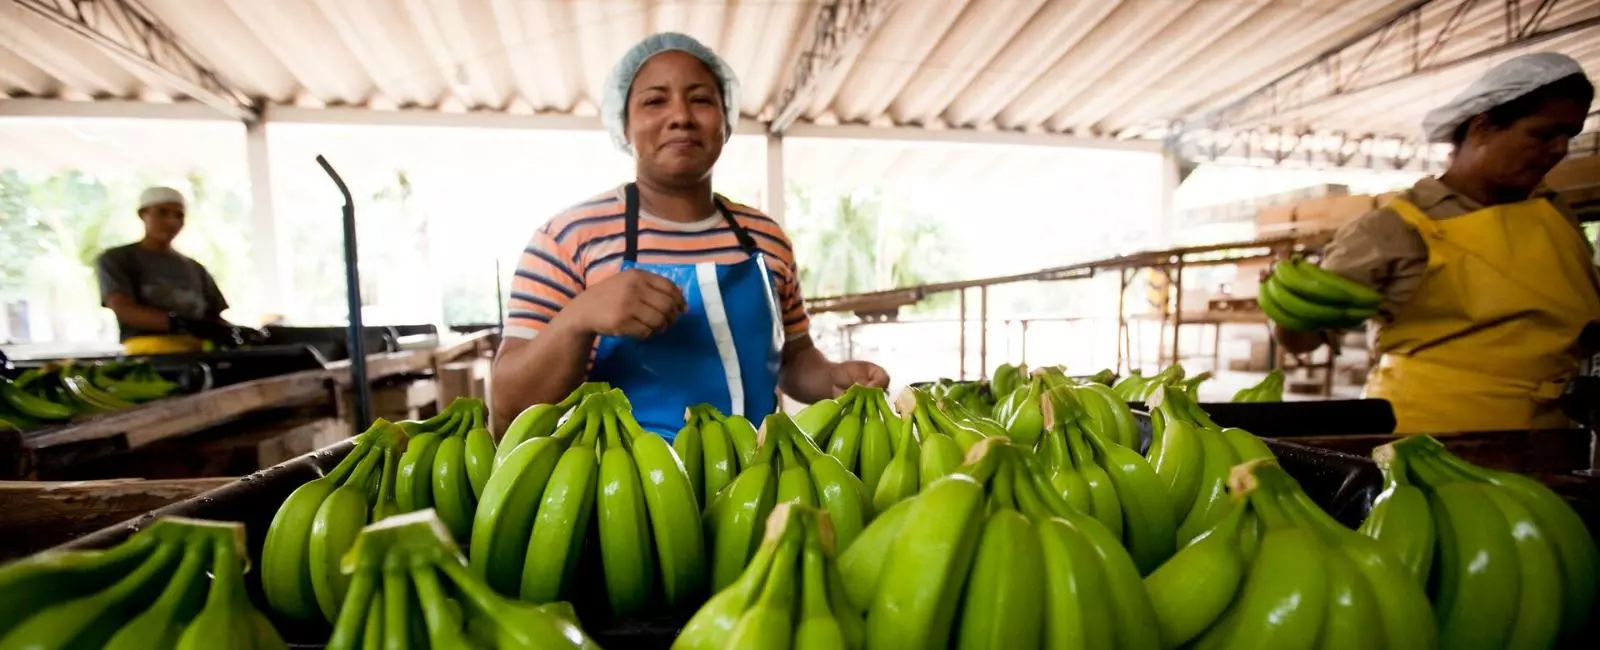 Pessoas selecionando bananas verdes